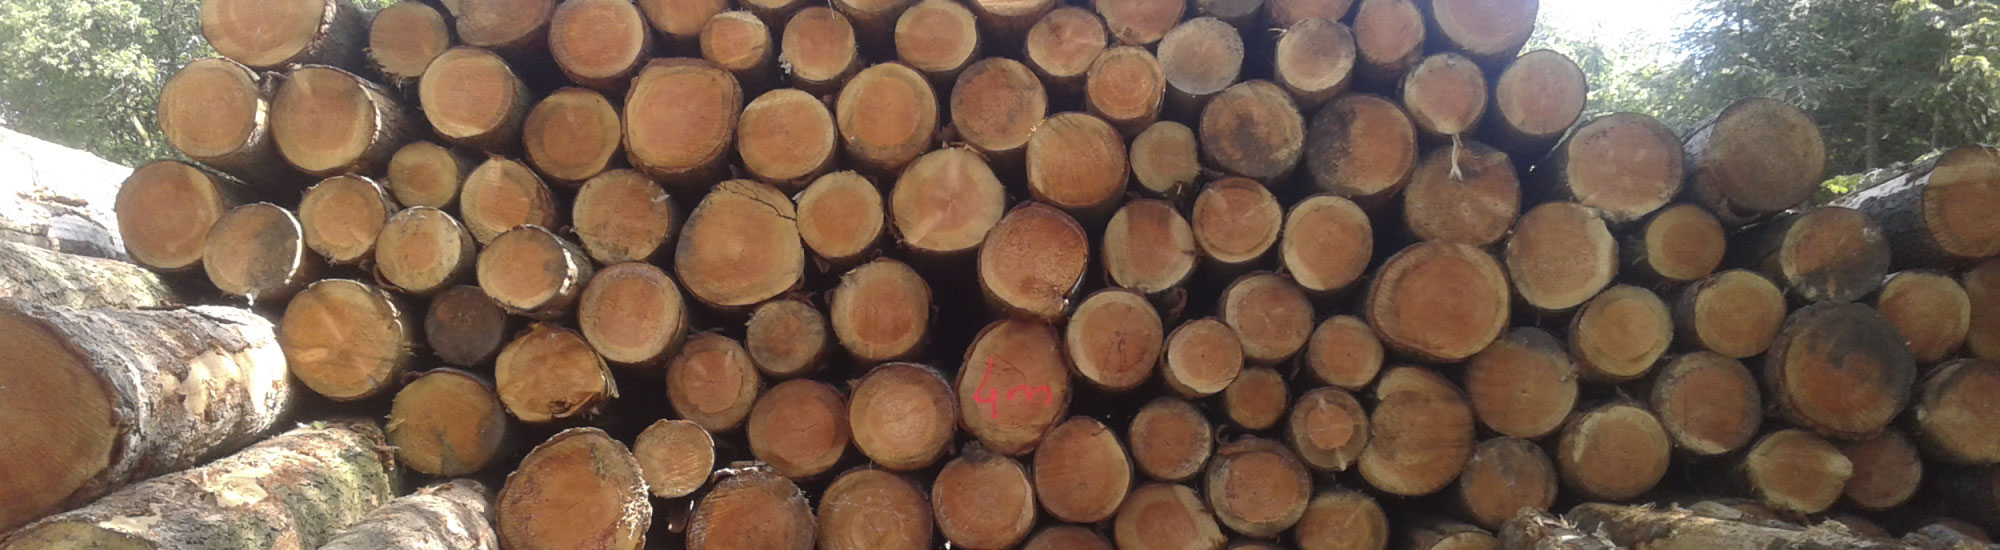 lot de bois rond - achat de bois